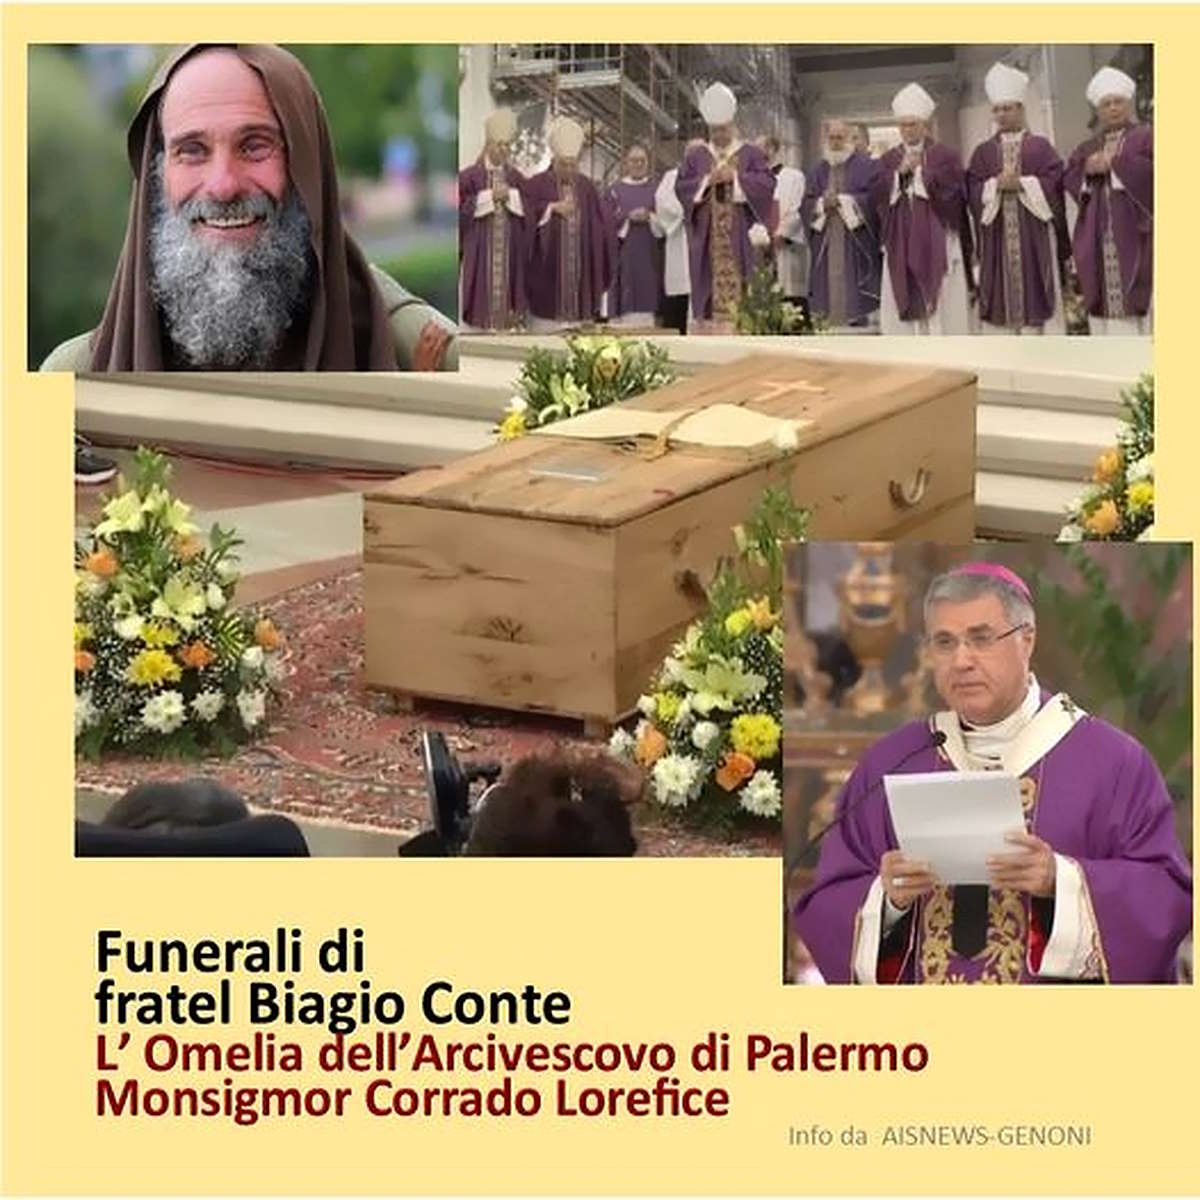 Oggi i funerali di fratel Biagio Conte. L'omelia dell’Arcivescovo di Palermo Monsignor Corrado Lorefice